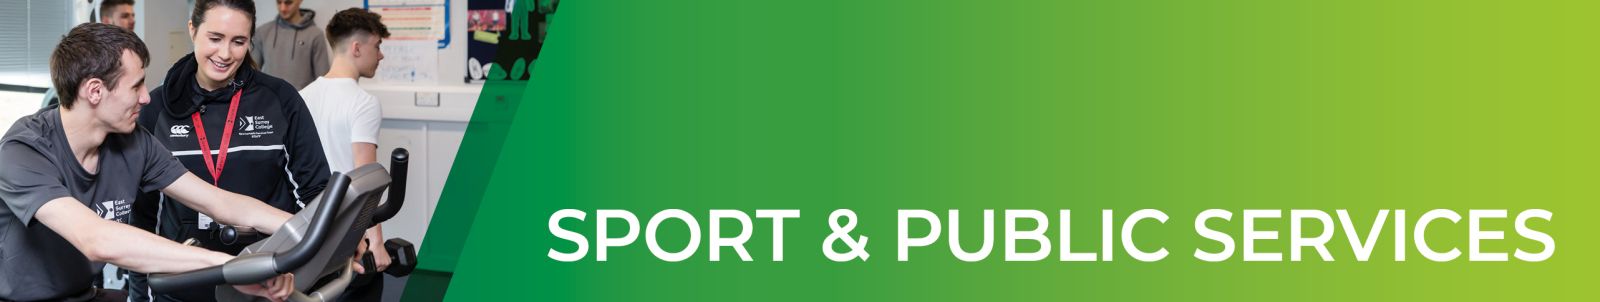 Banner image - Sport & Public Services